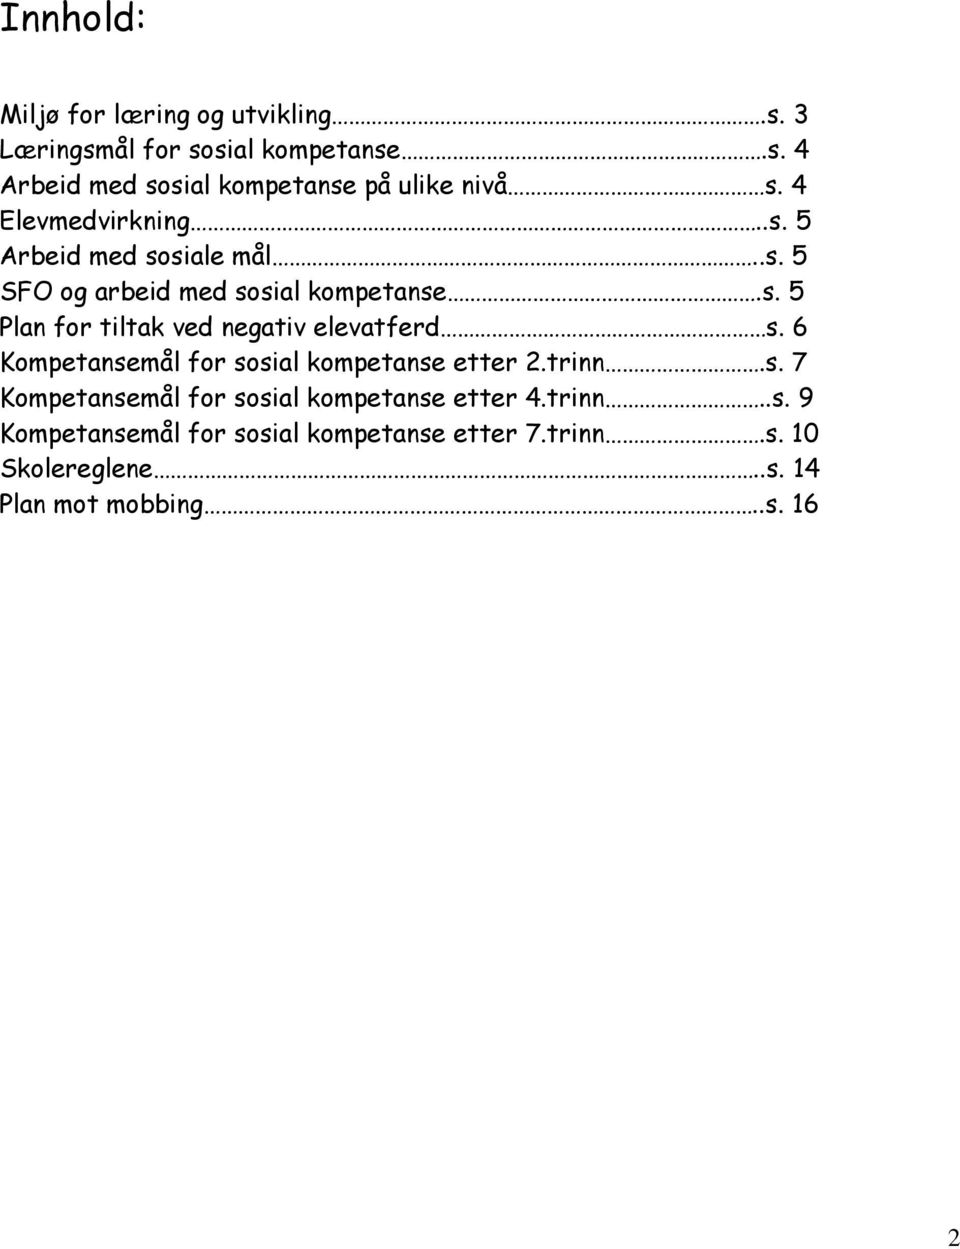 6 Kompetansemål for sosial kompetanse etter 2.trinn.s. 7 Kompetansemål for sosial kompetanse etter 4.trinn..s. 9 Kompetansemål for sosial kompetanse etter 7.